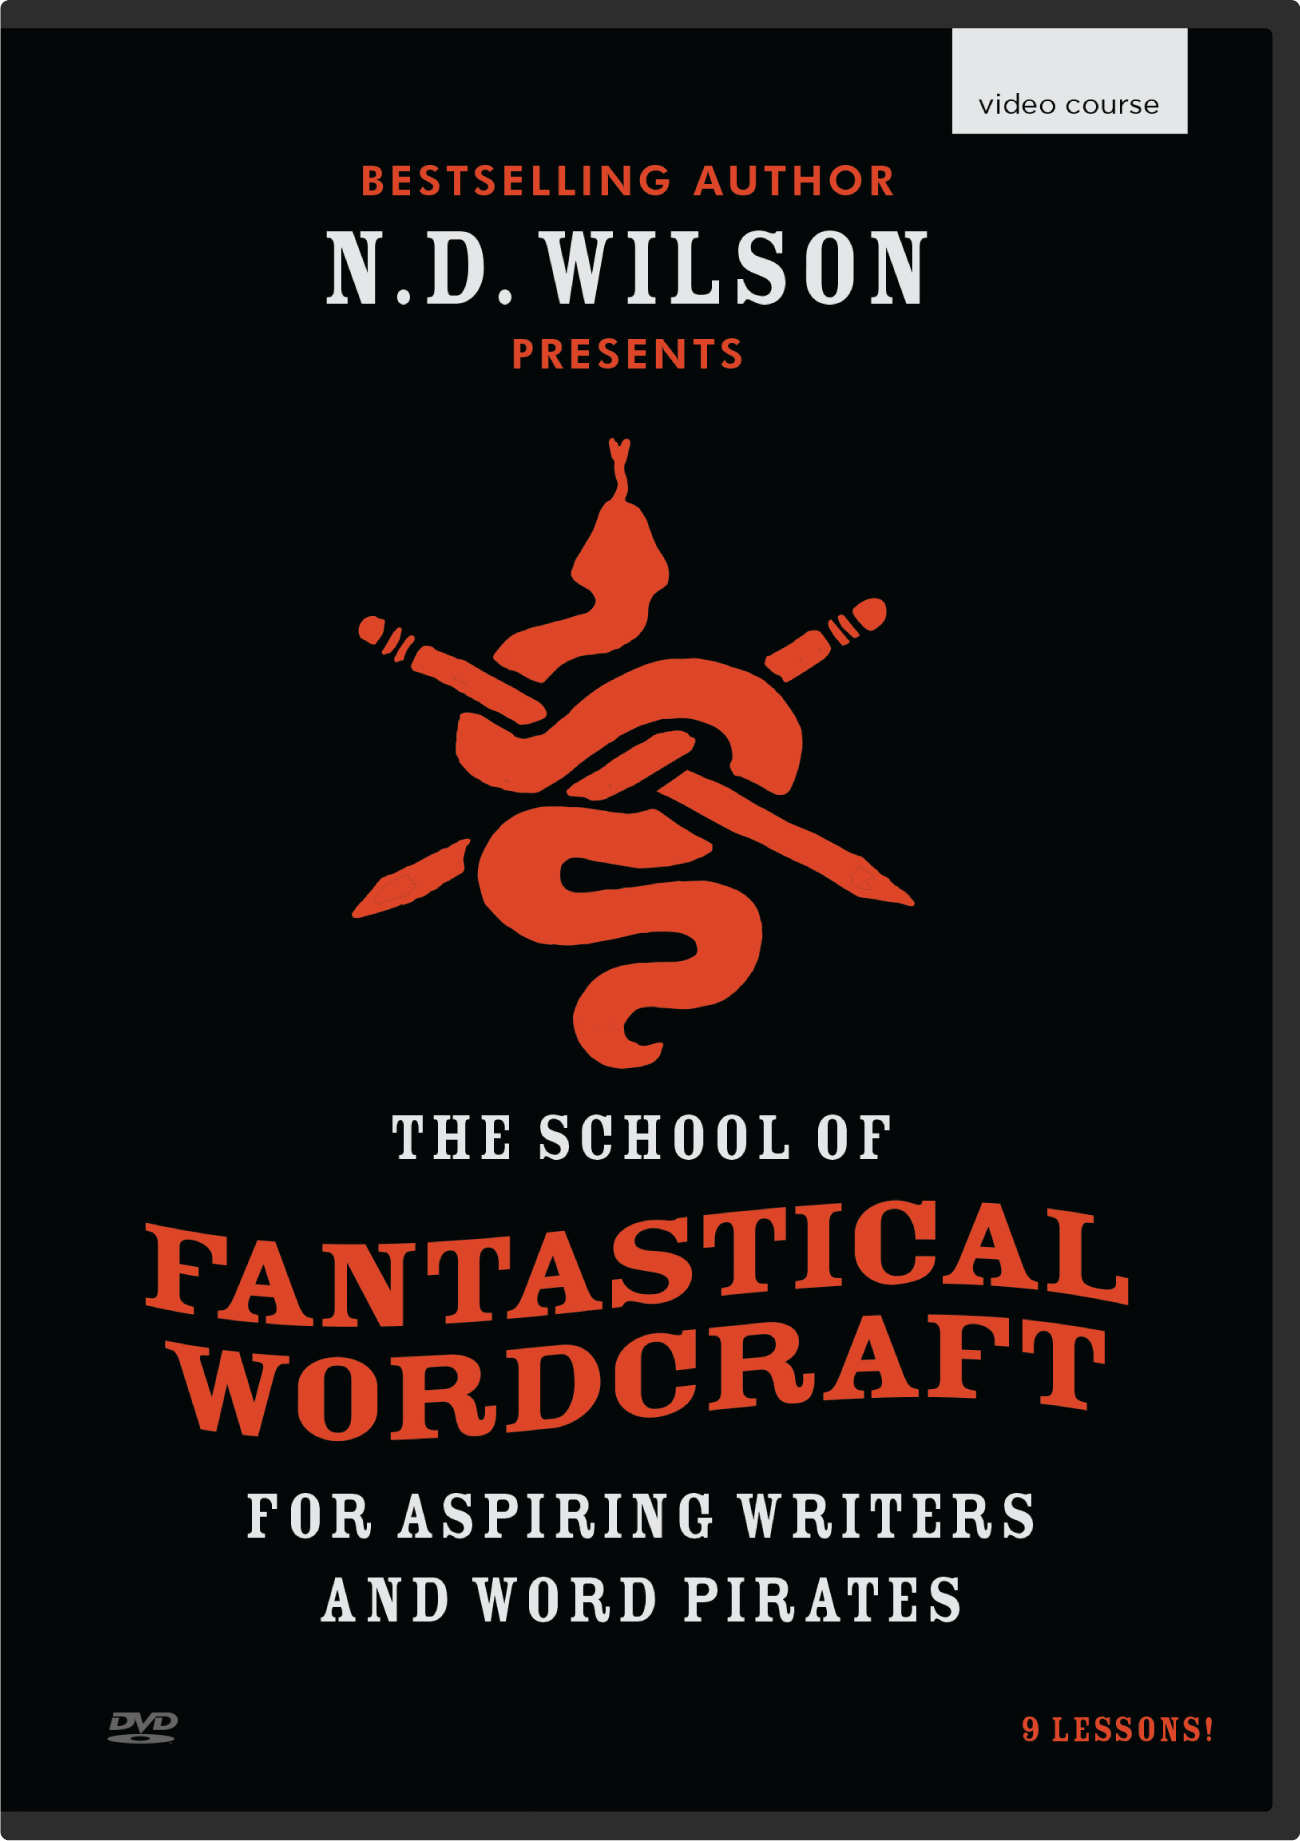 N.D. Wilson's School of Fantastical Wordcraft (DVD)